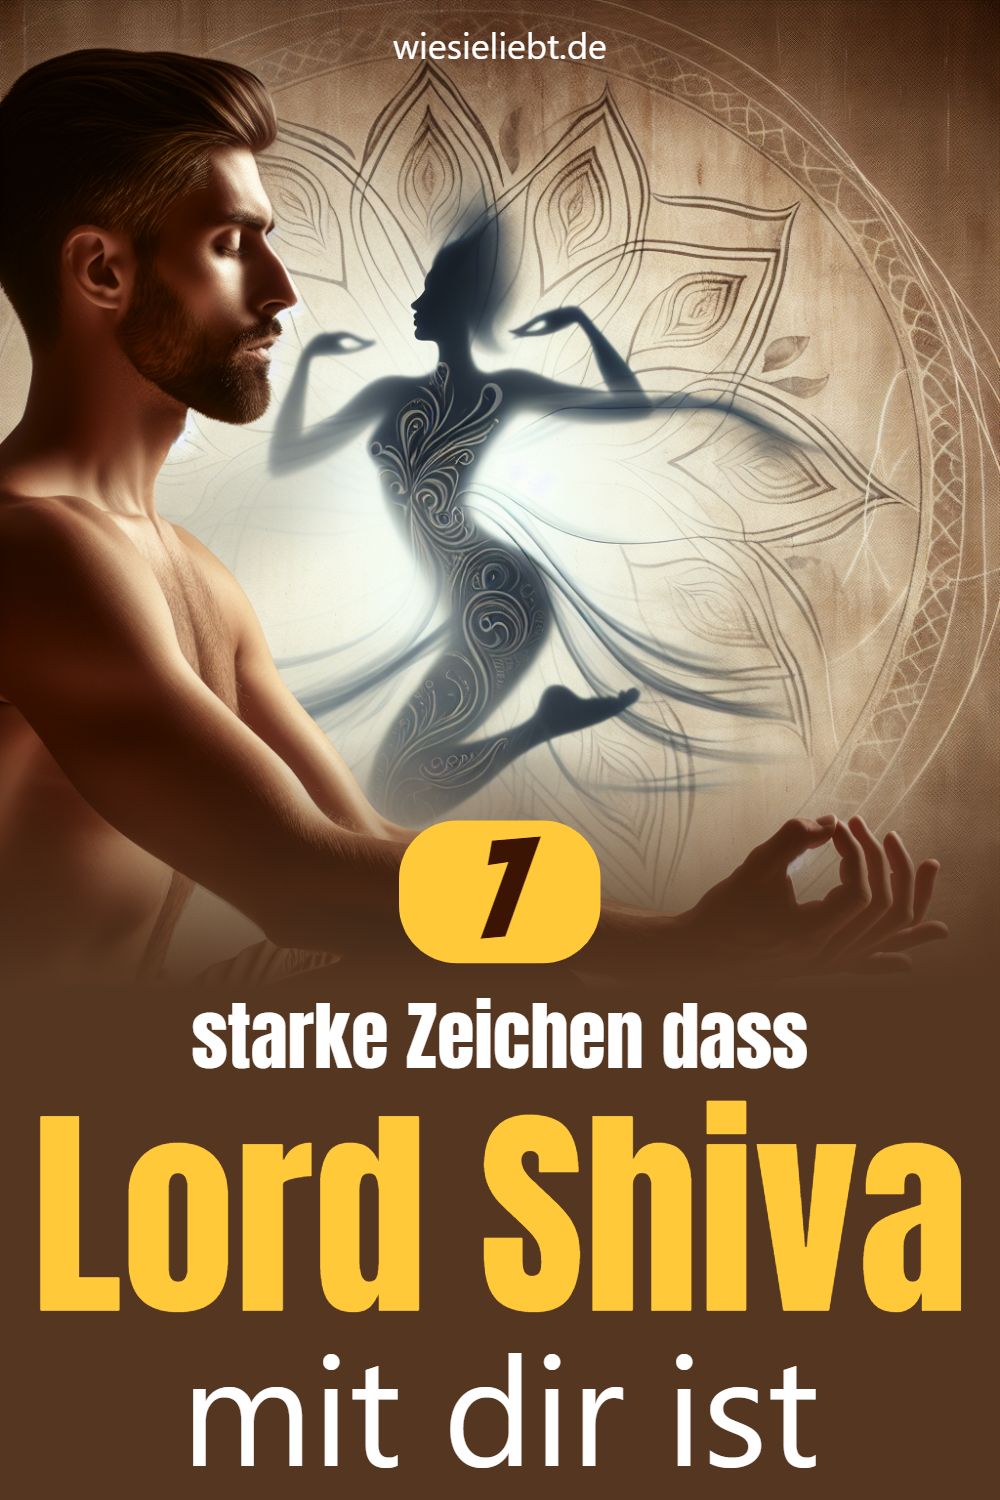 Lord Shiva mit dir ist 7 7 starke Zeichen dass